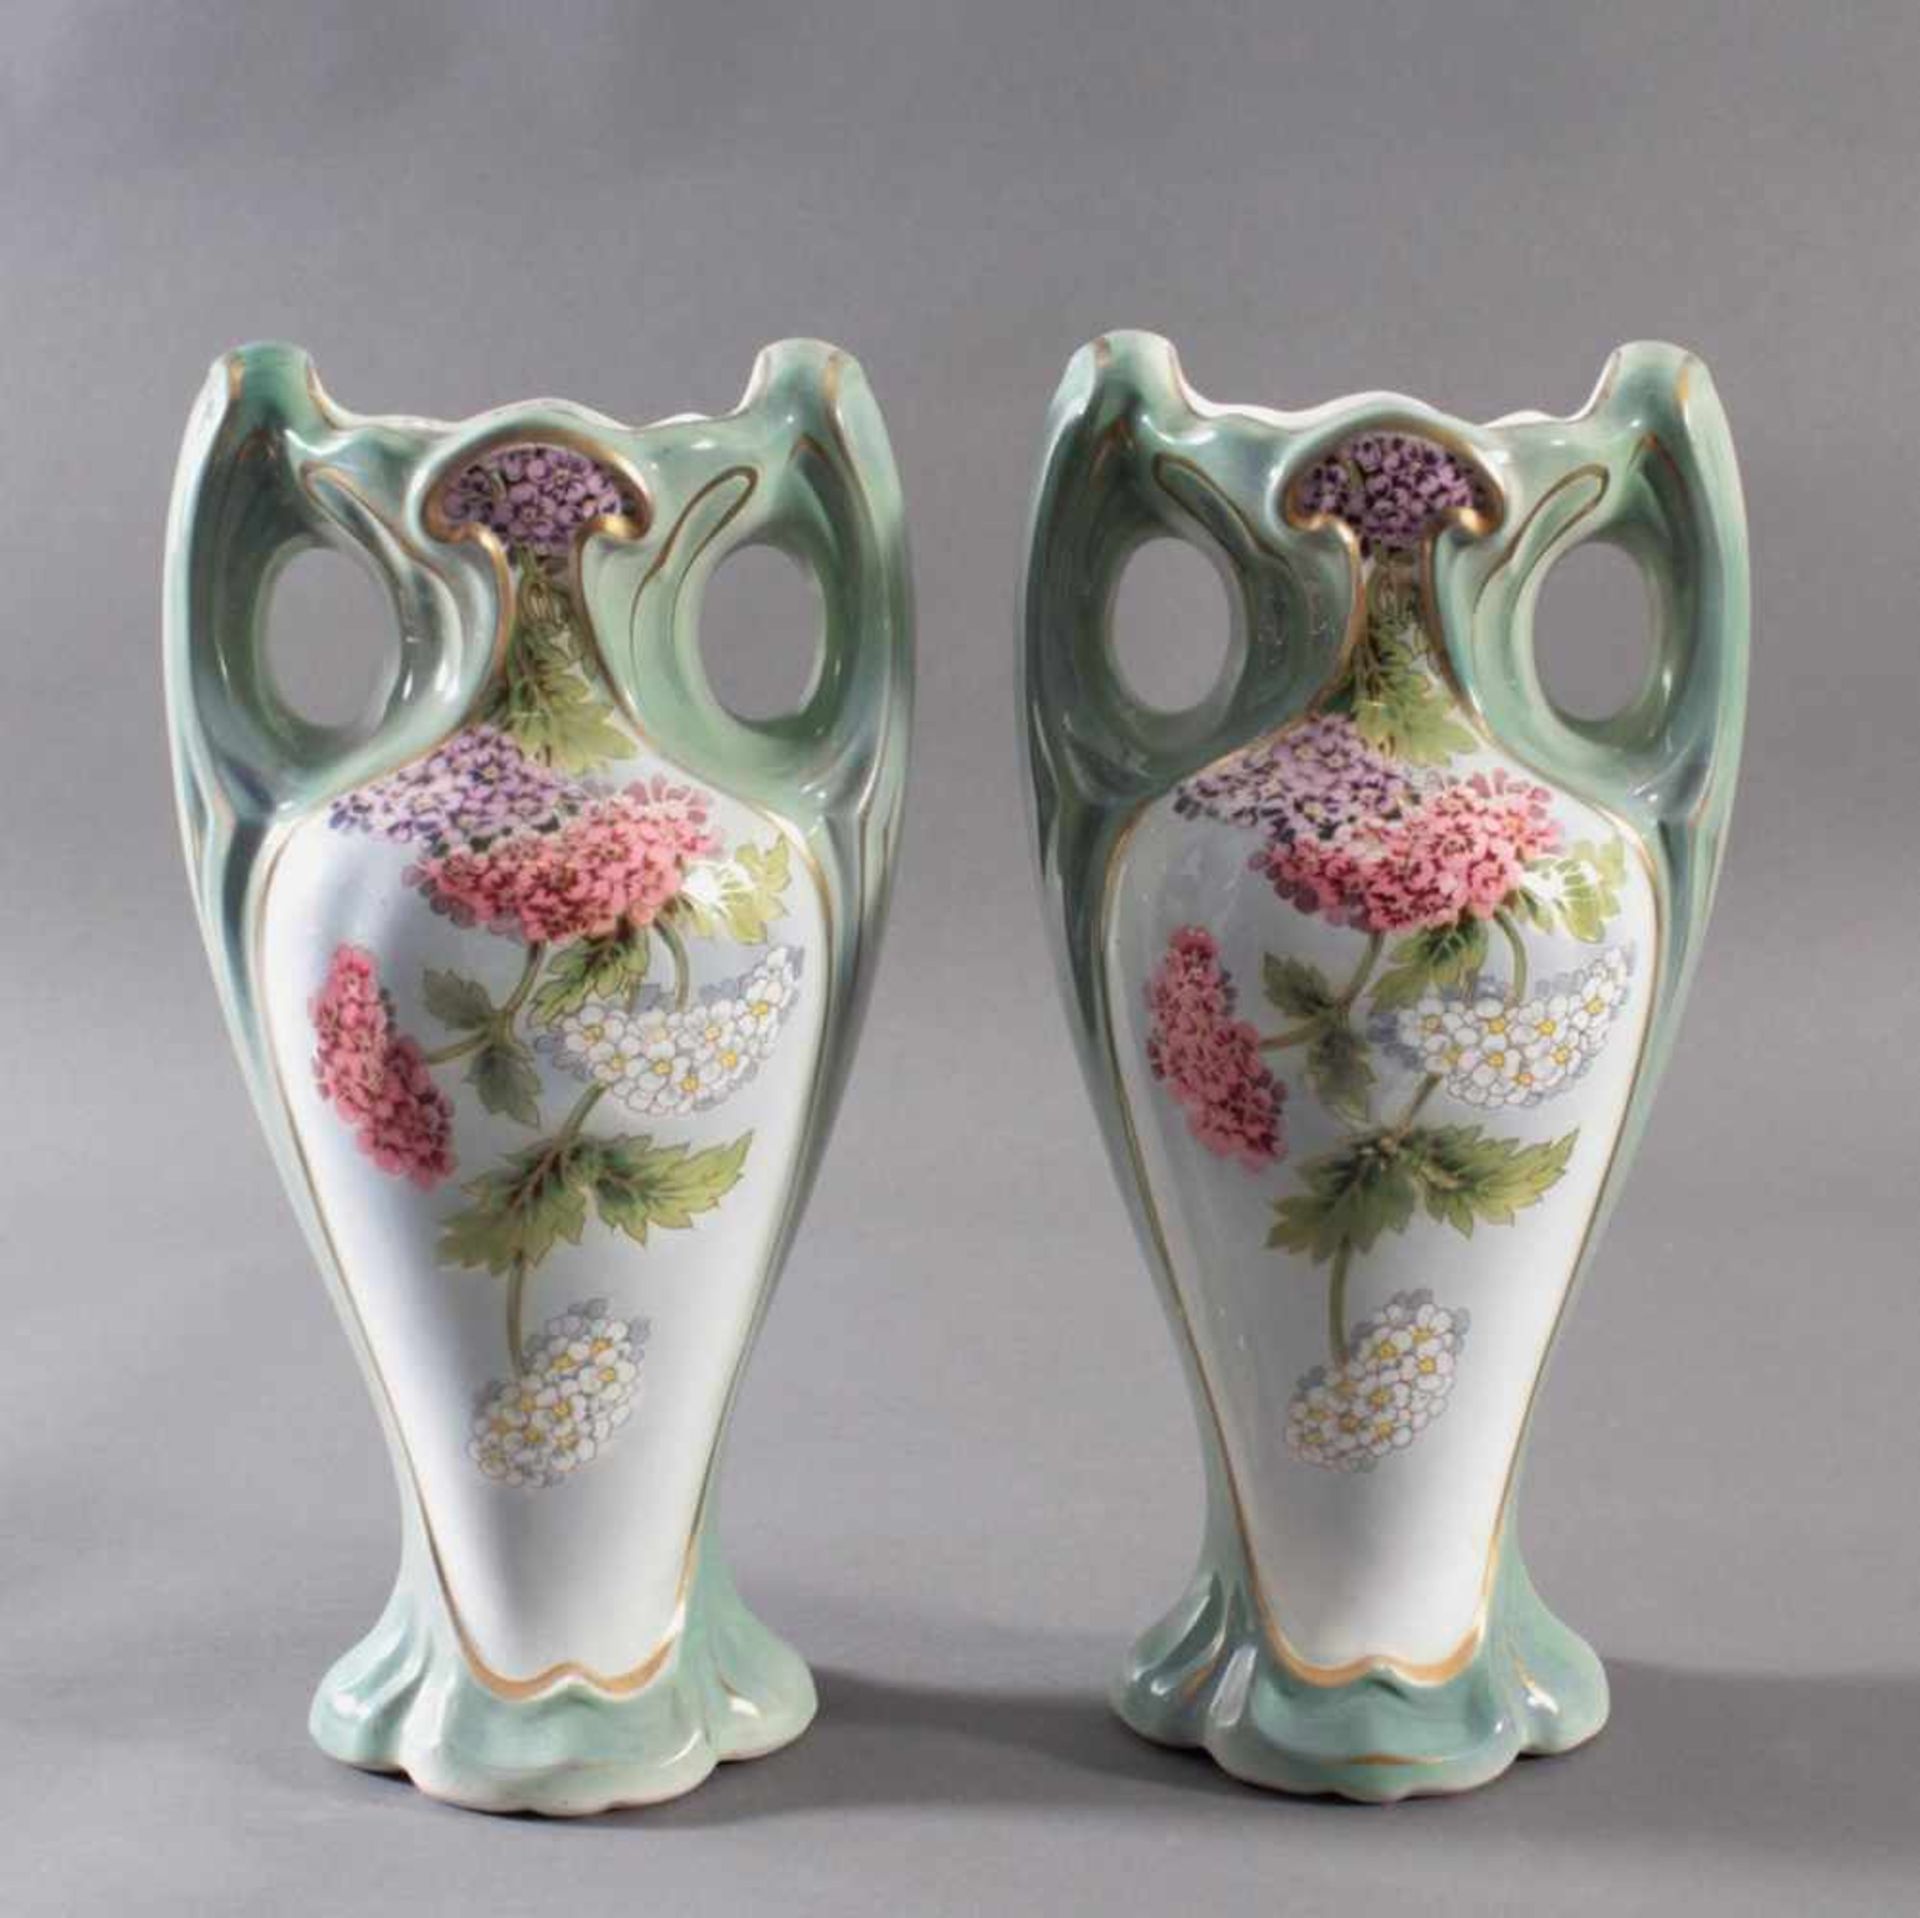 Paar französische JugendstilvasenSaint Amand ET Hamage Nord, grüne Stempelmarke, große Fayence-Vasen